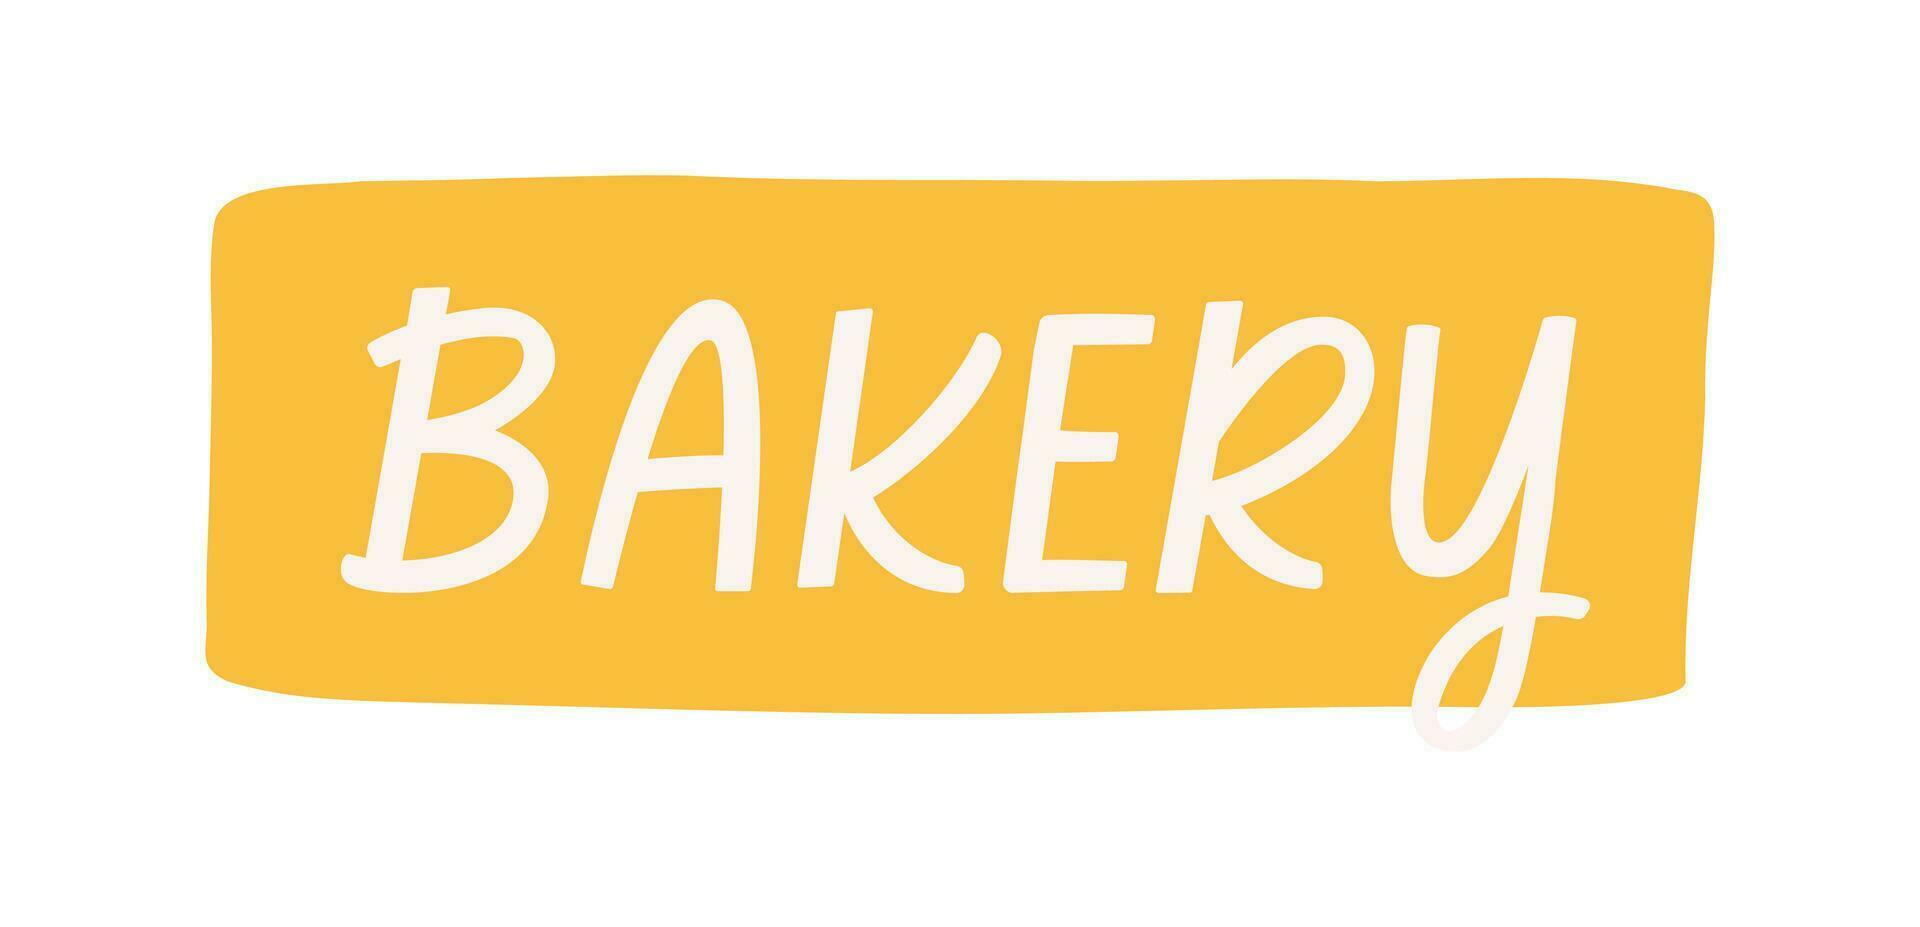 Bäckerei Schild, Hand gezeichnet eben Vektor Illustration isoliert auf Weiß Hintergrund. Banner mit Text. hängend Tafel zum Bäckerei Geschäft.